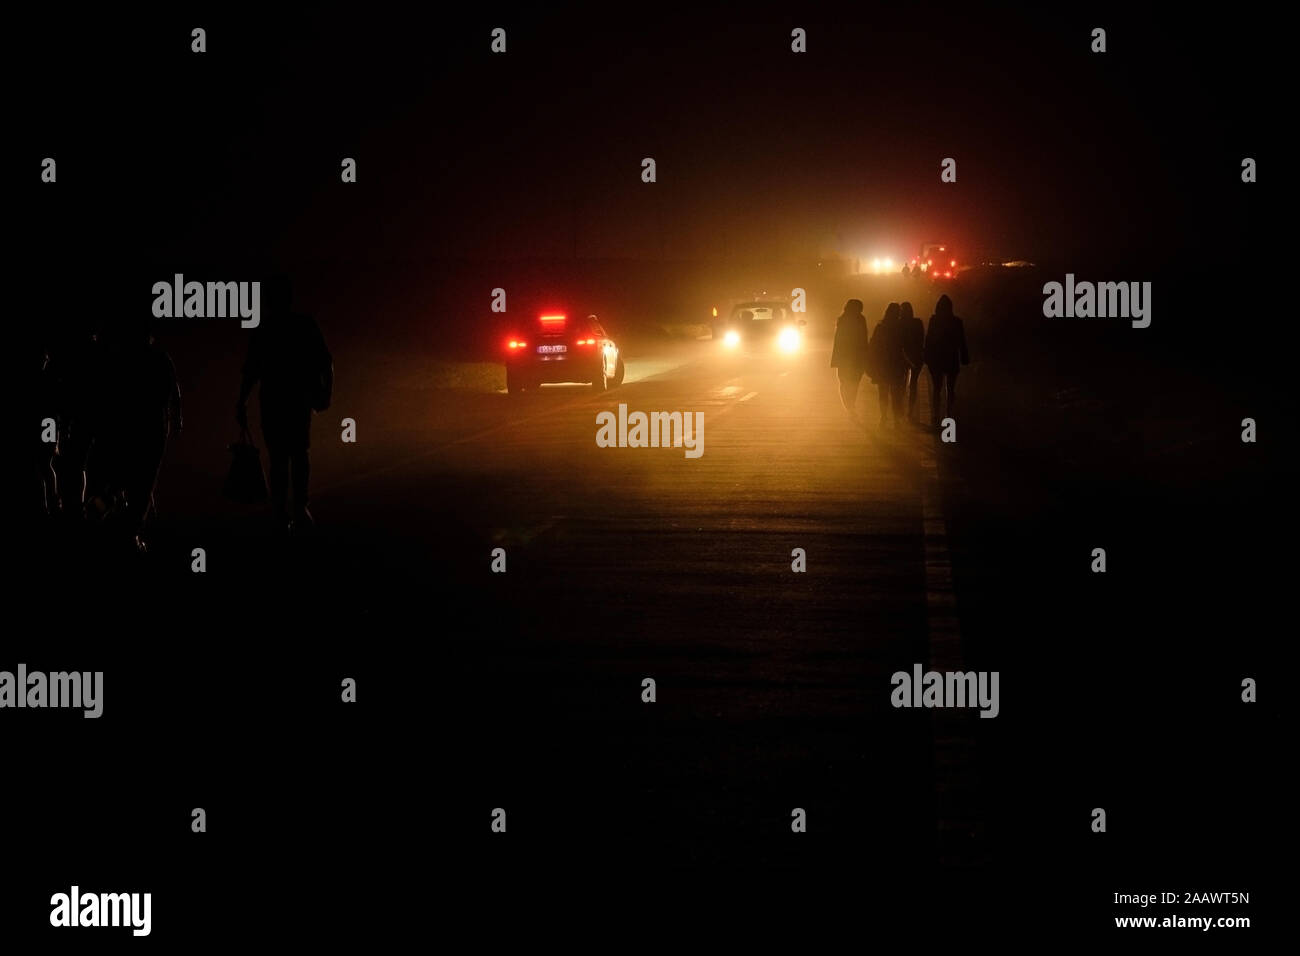 Portugal, Algarve, autos pasando las siluetas de cuatro personas caminando a lo largo de la carretera en el Cabo de San Vicente en la noche Foto de stock